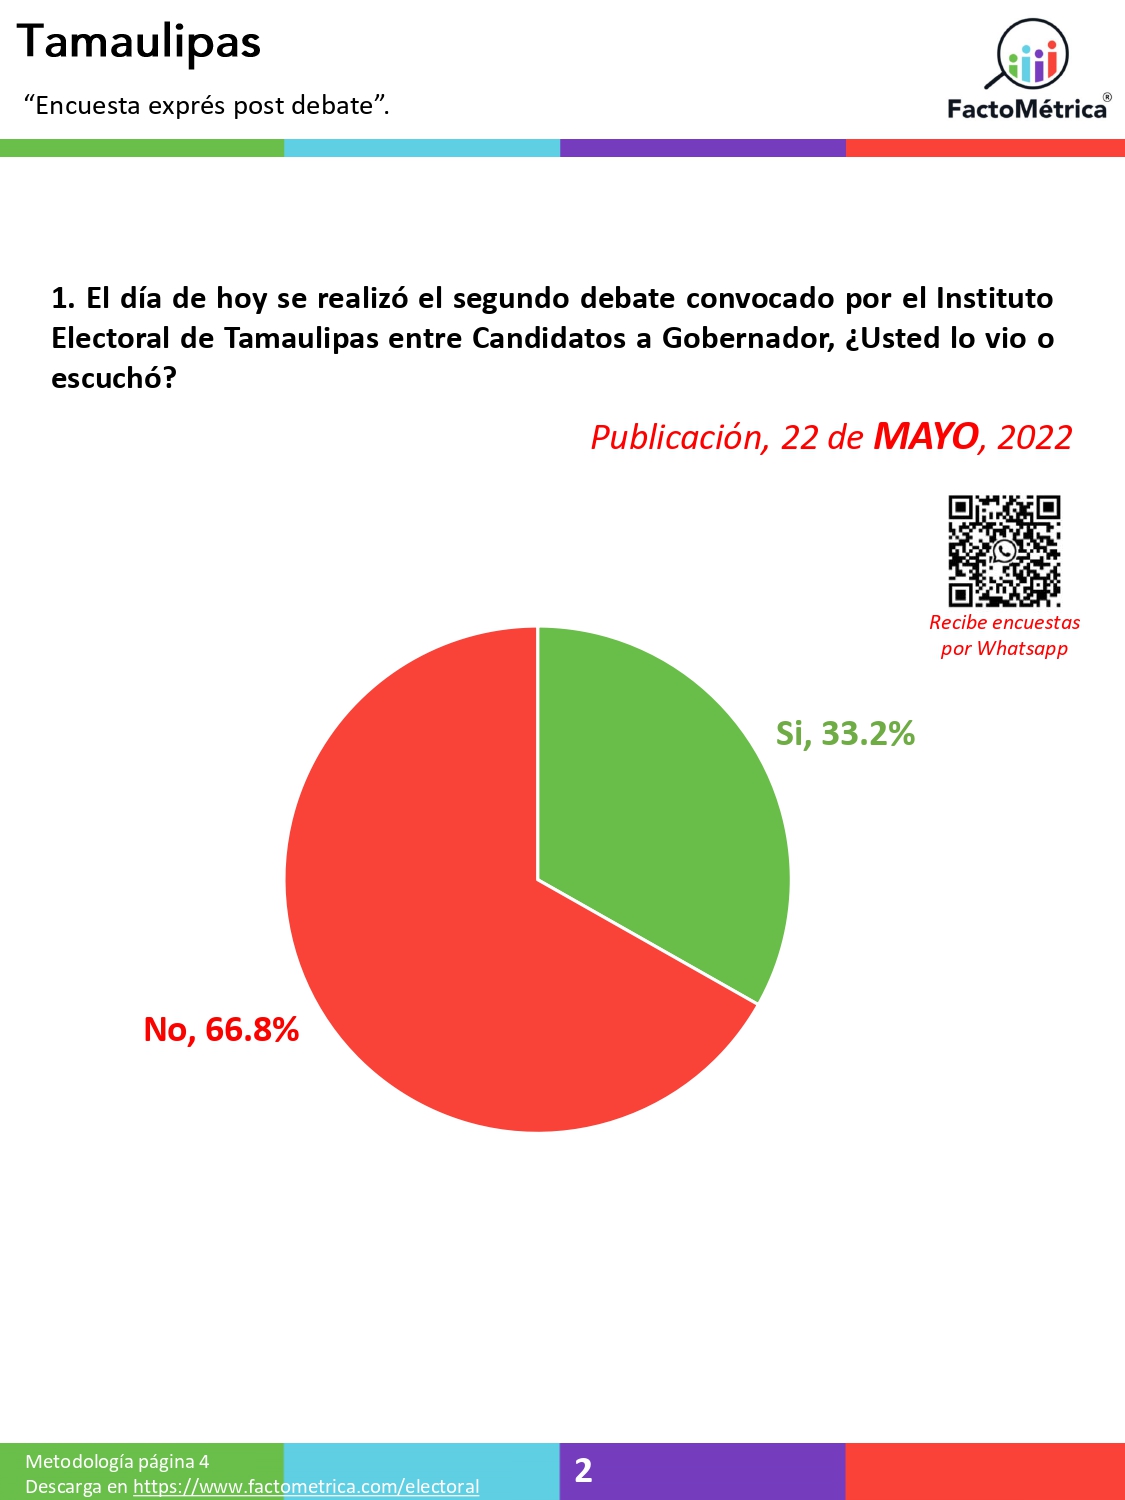 Candidato de Morena le hace fuchi al debate en Tamaulipas y deja que su rival del PRI-PAN lo gane